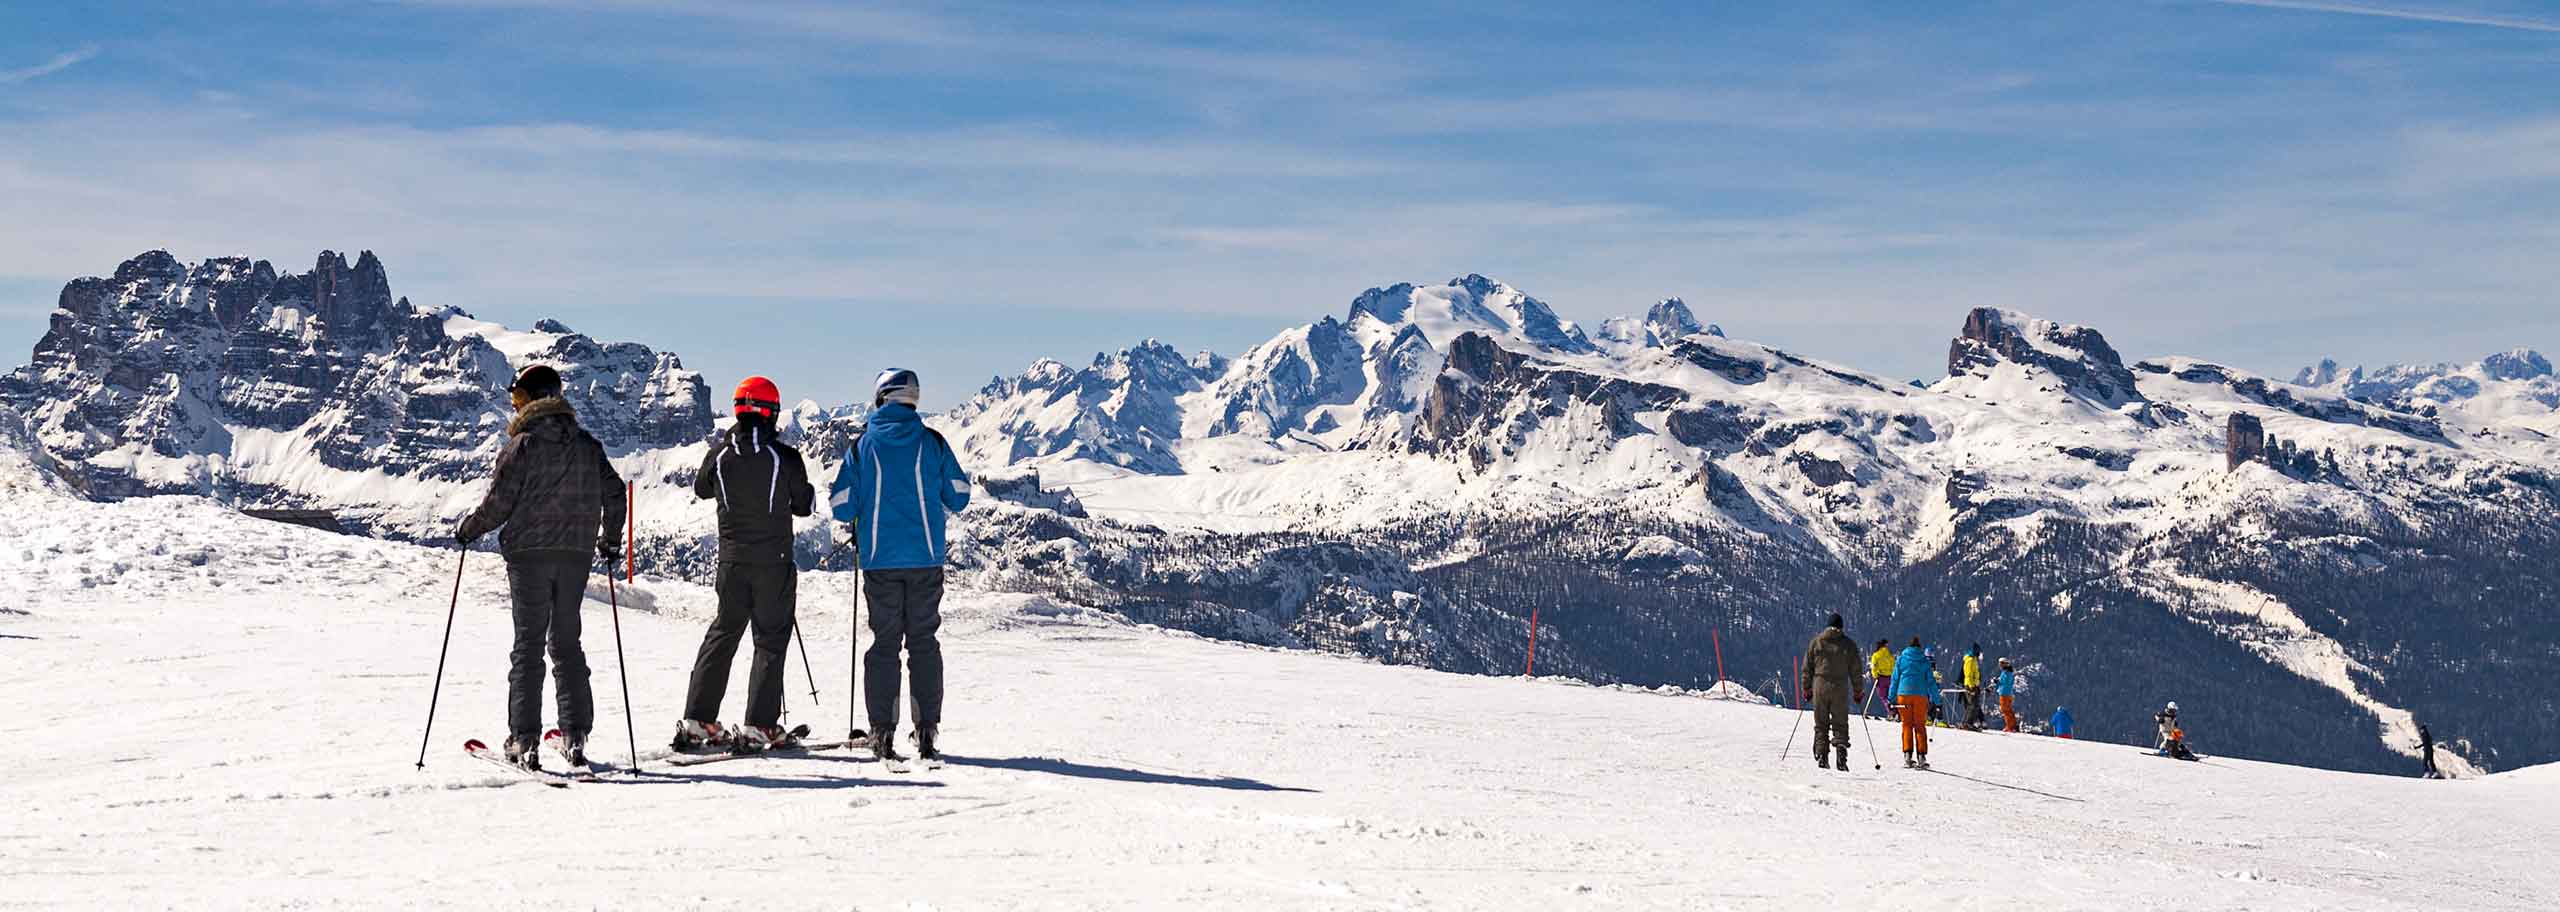 Sci Safari a Cortina d'Ampezzo, Tour Sciistico nel Dolomiti Superski